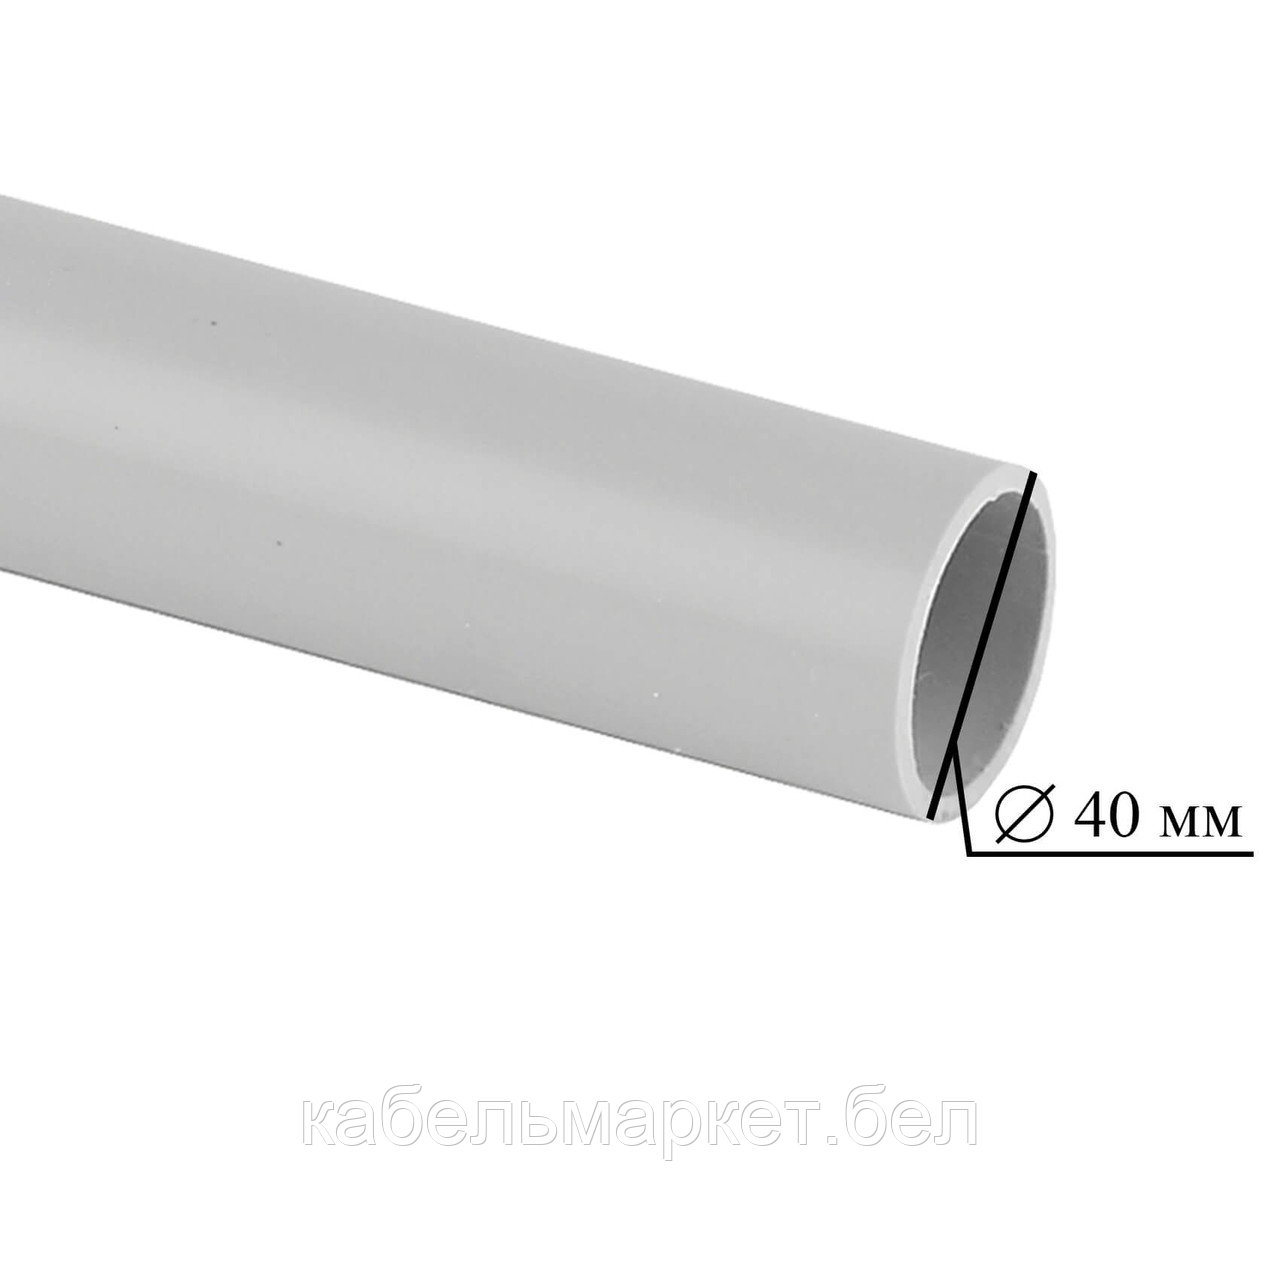 54000 - Труба ПВХ гладкая 40 мм (по 3 метра)